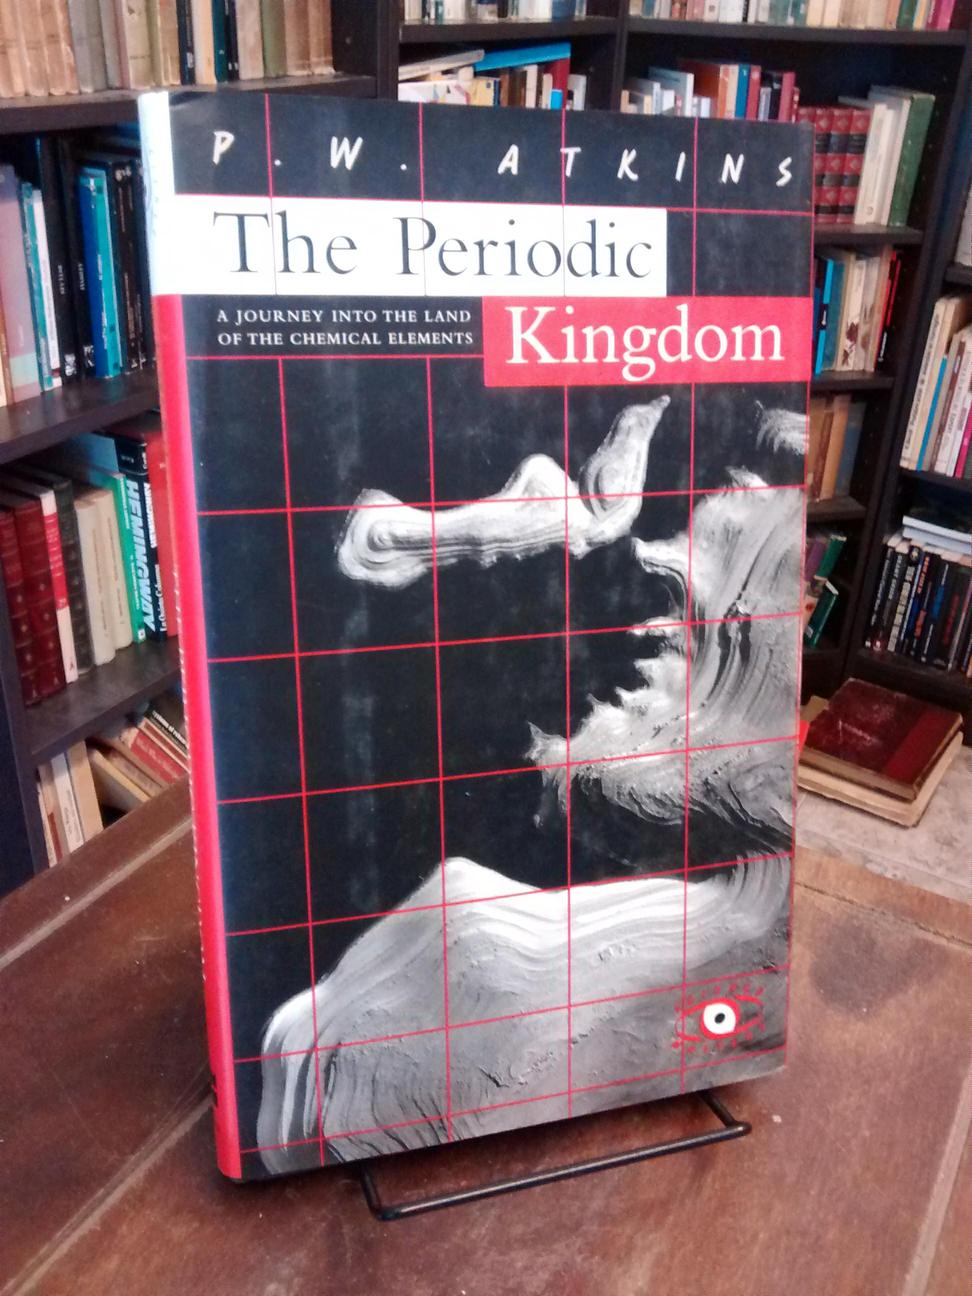 The Periodic Kingdom - P. W. Atkins